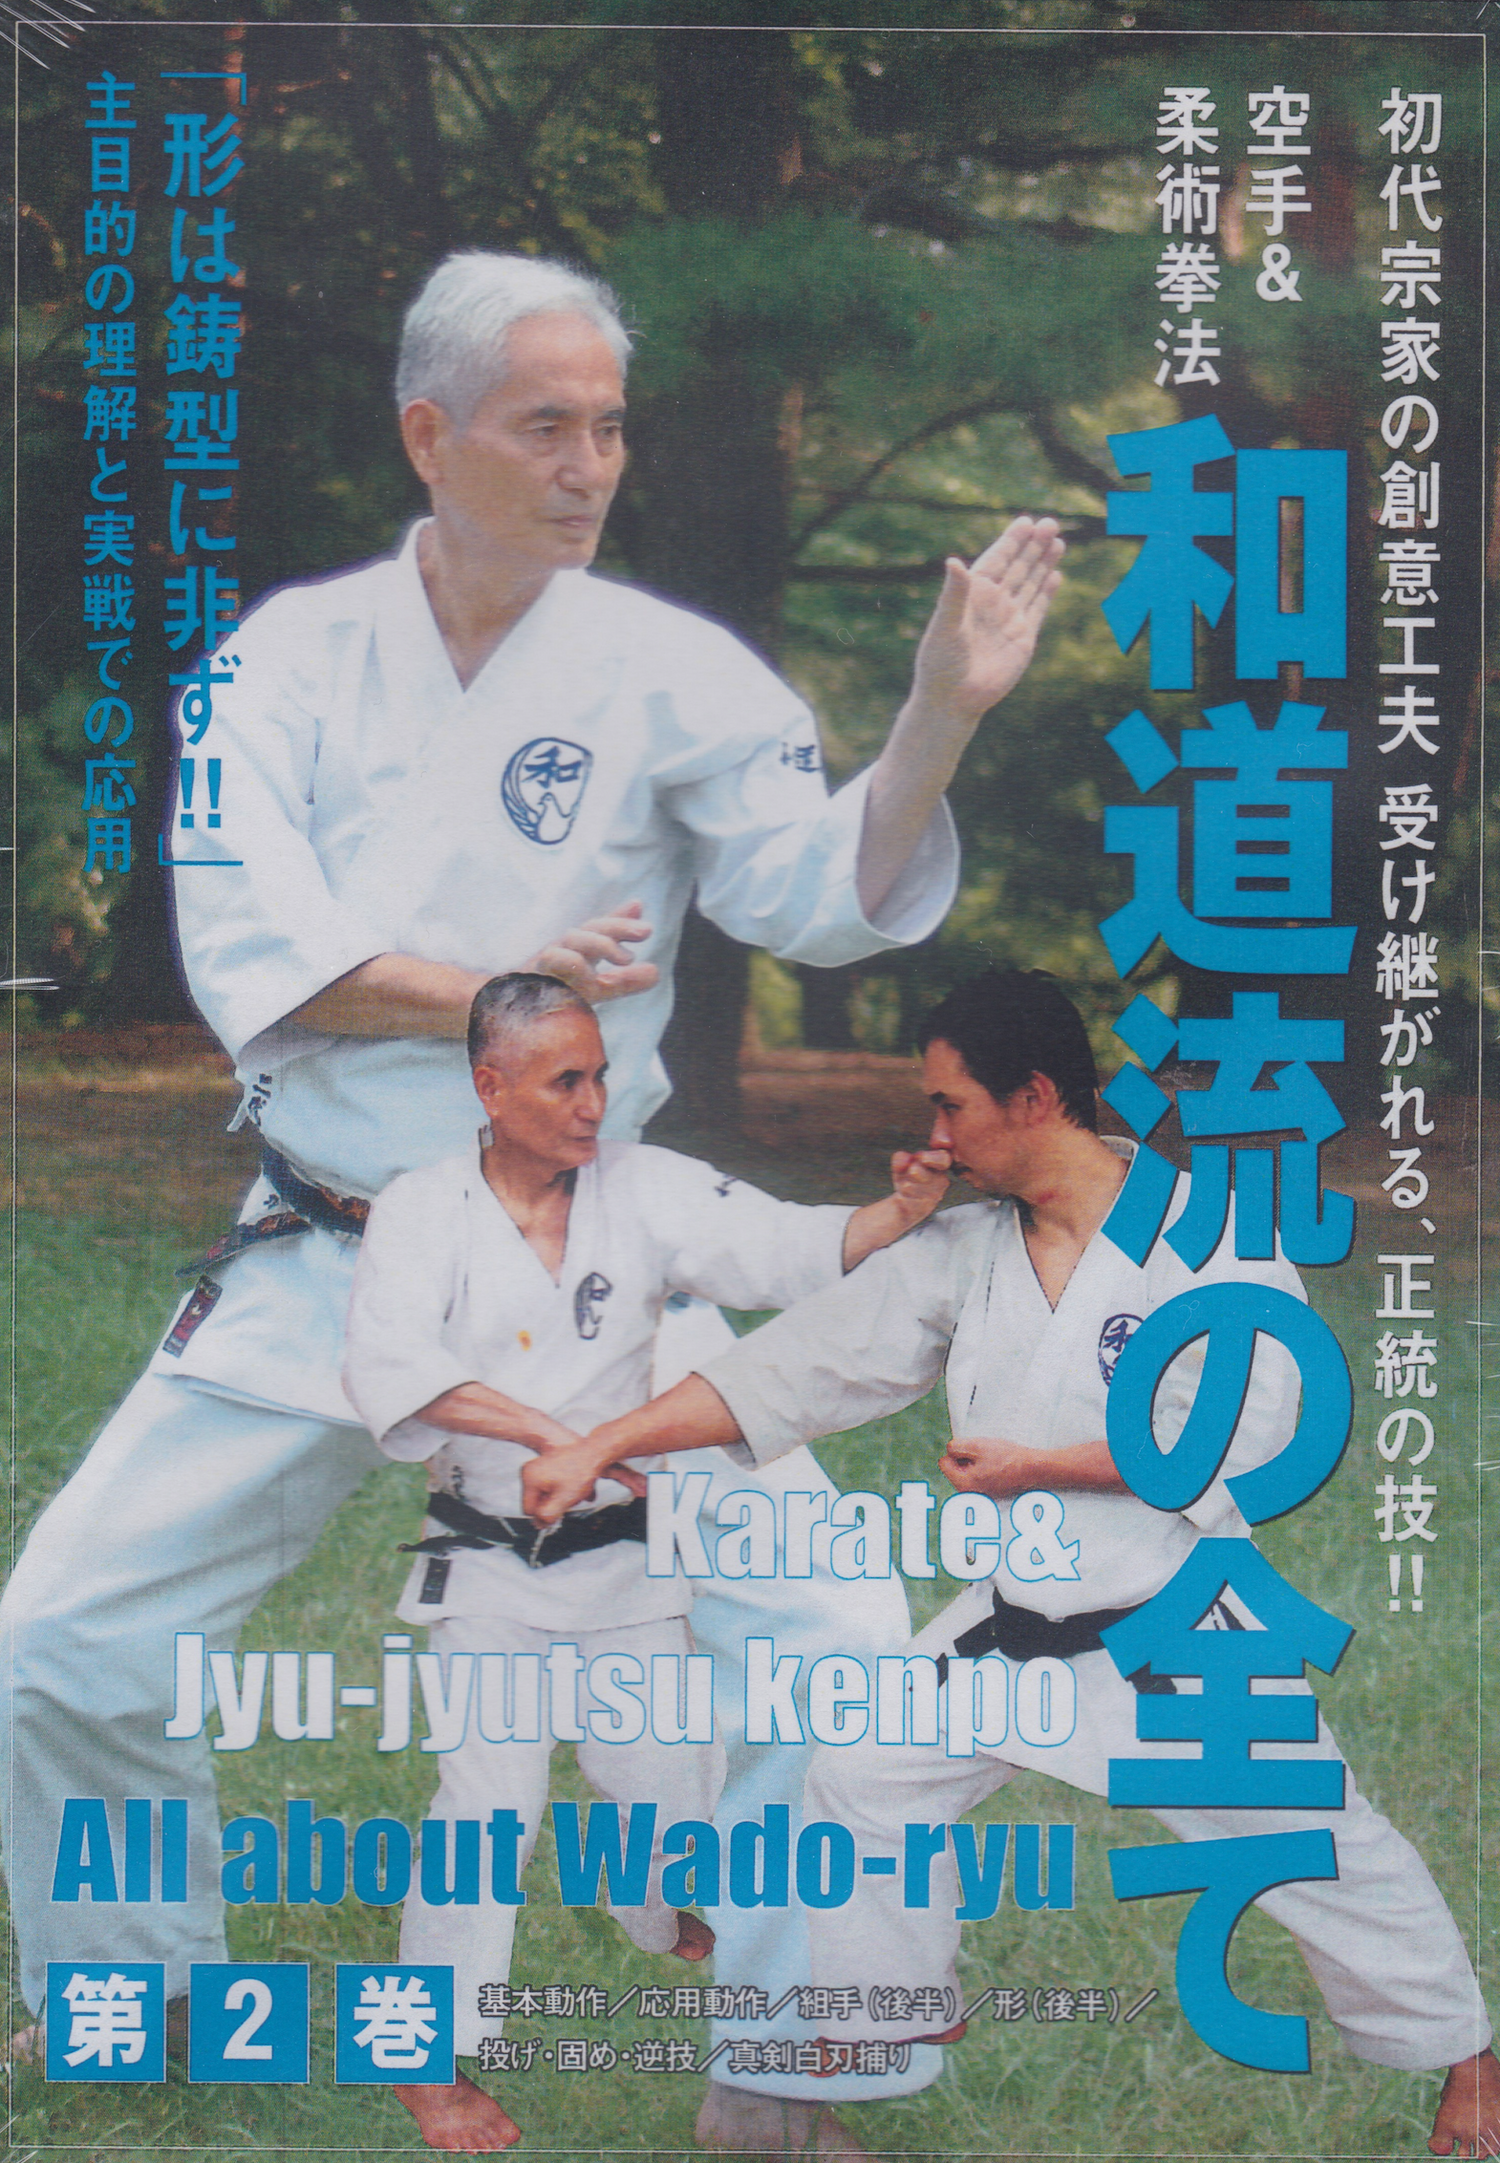 Todo Wado Ryu DVD 2: Karate y Jujutsu Kenpo de Jiro Otsuka